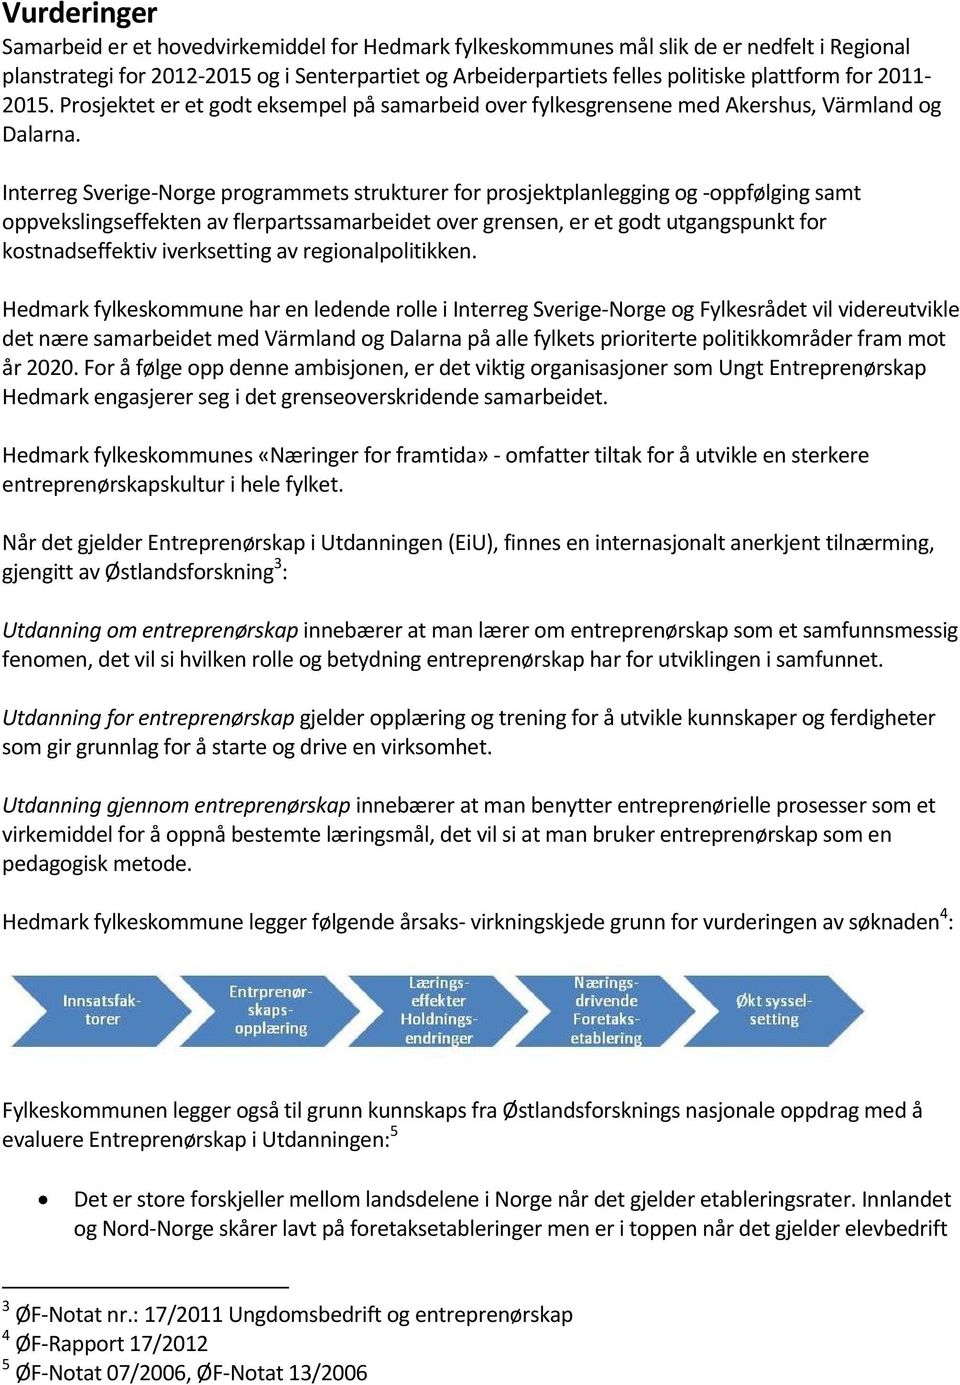 Interreg Sverige-Norge programmets strukturer for prosjektplanlegging og -oppfølging samt oppvekslingseffekten av flerpartssamarbeidet over grensen, er et godt utgangspunkt for kostnadseffektiv